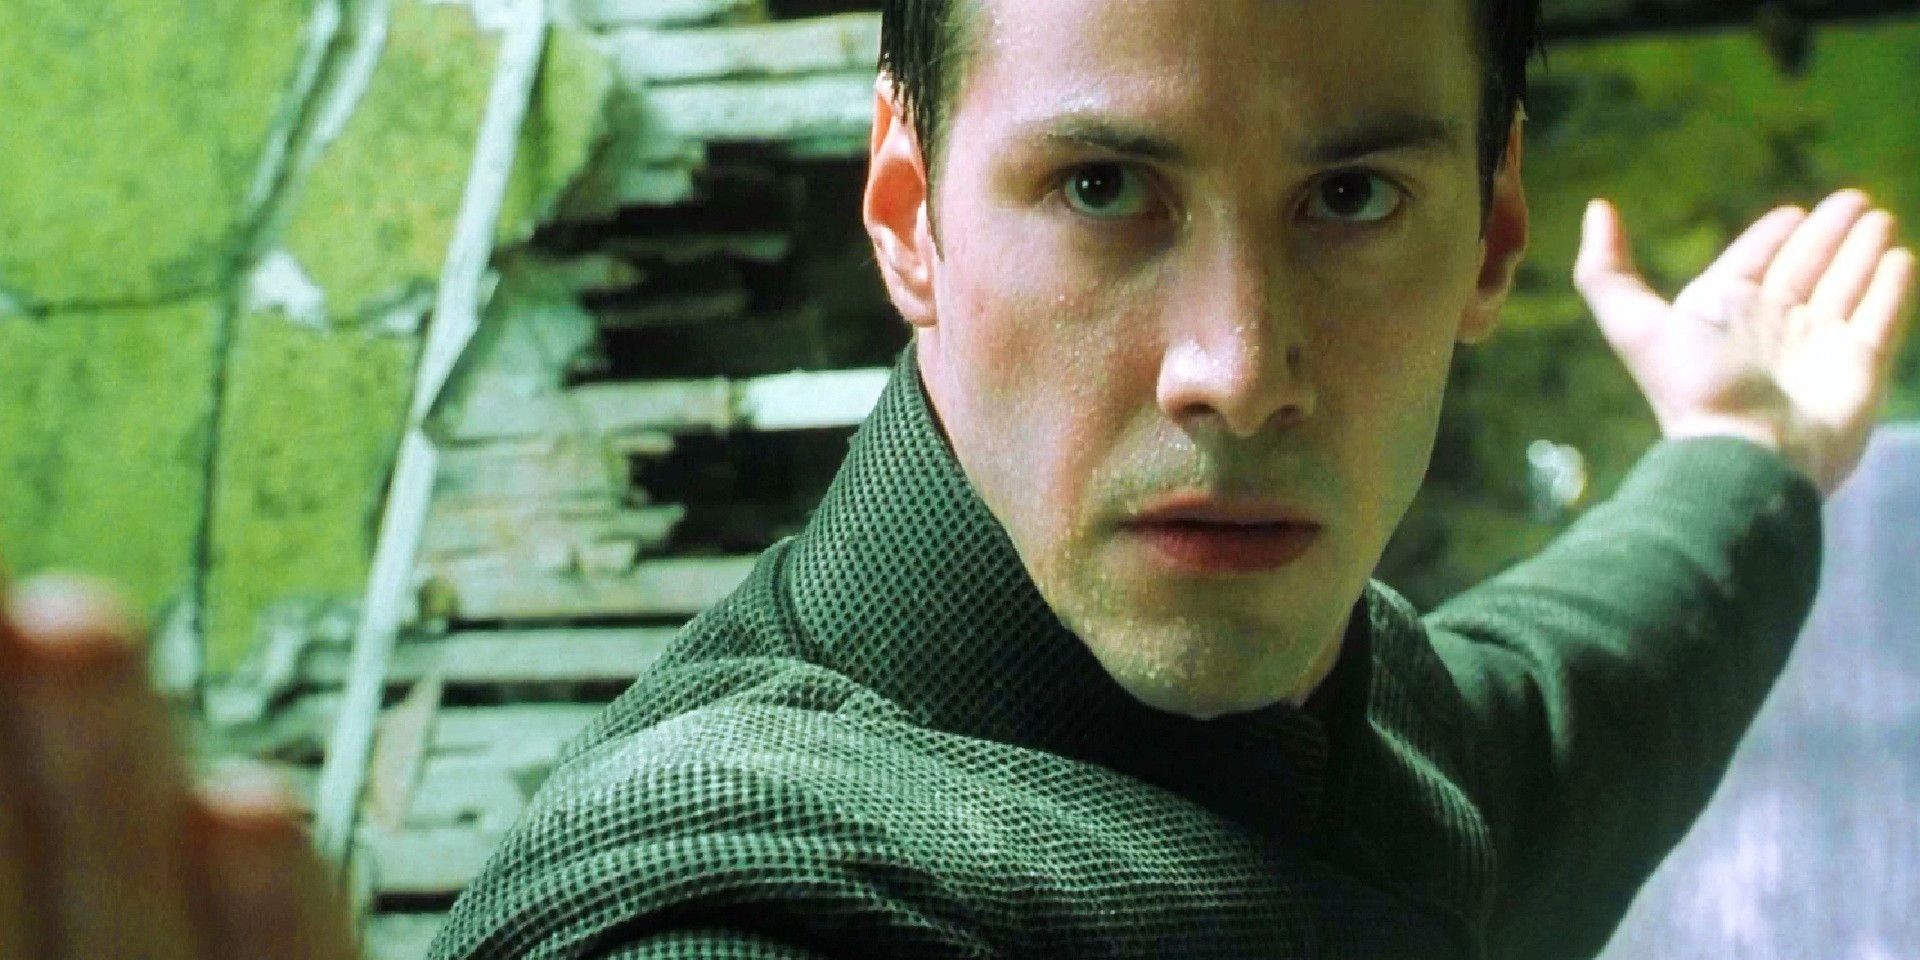 Neo in his signature pose in The Matrix 1999